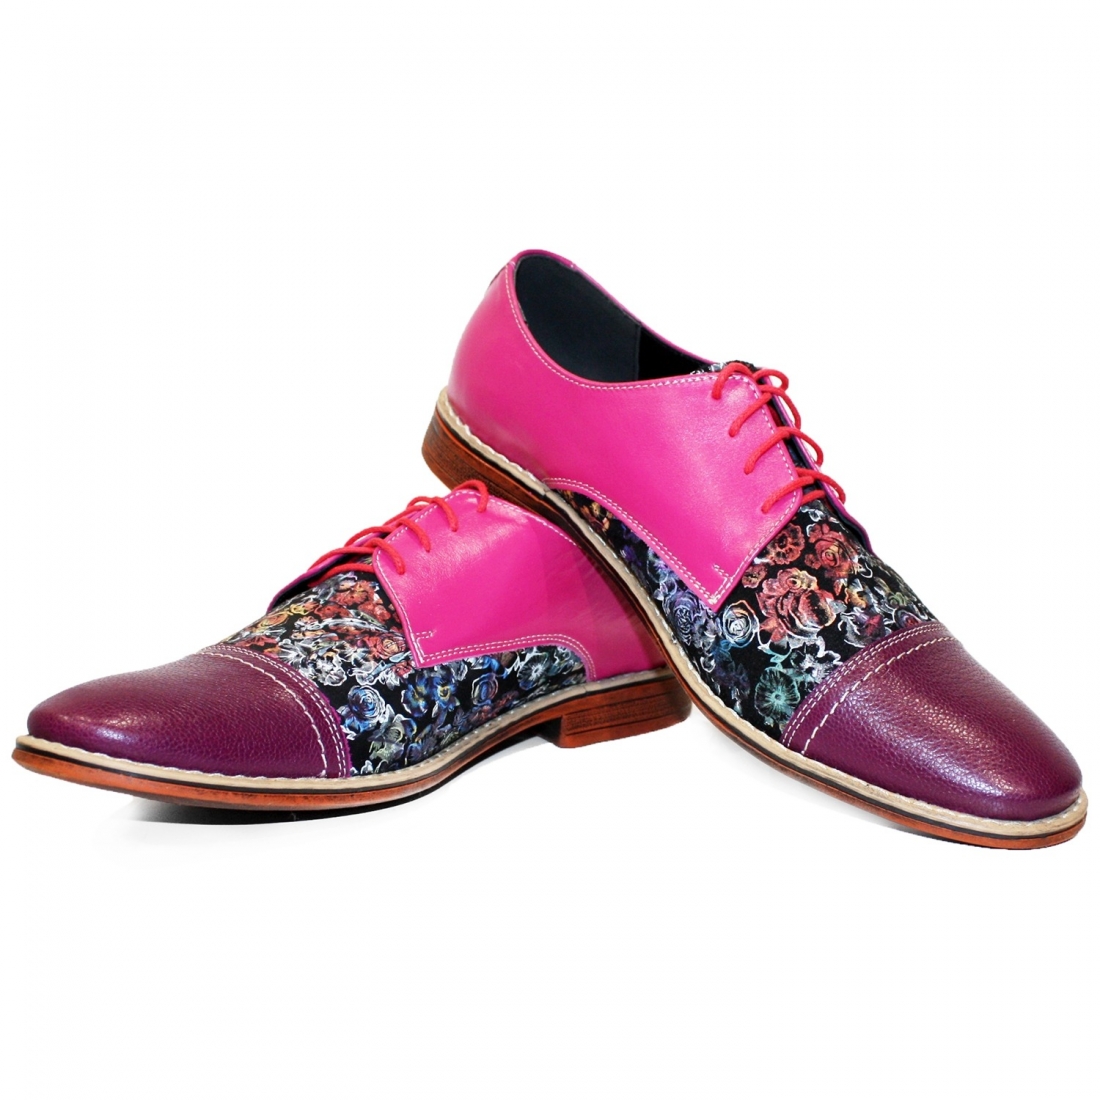 Modello Vollnero - Scarpe Classiche - Handmade Colorful Italian Leather Shoes